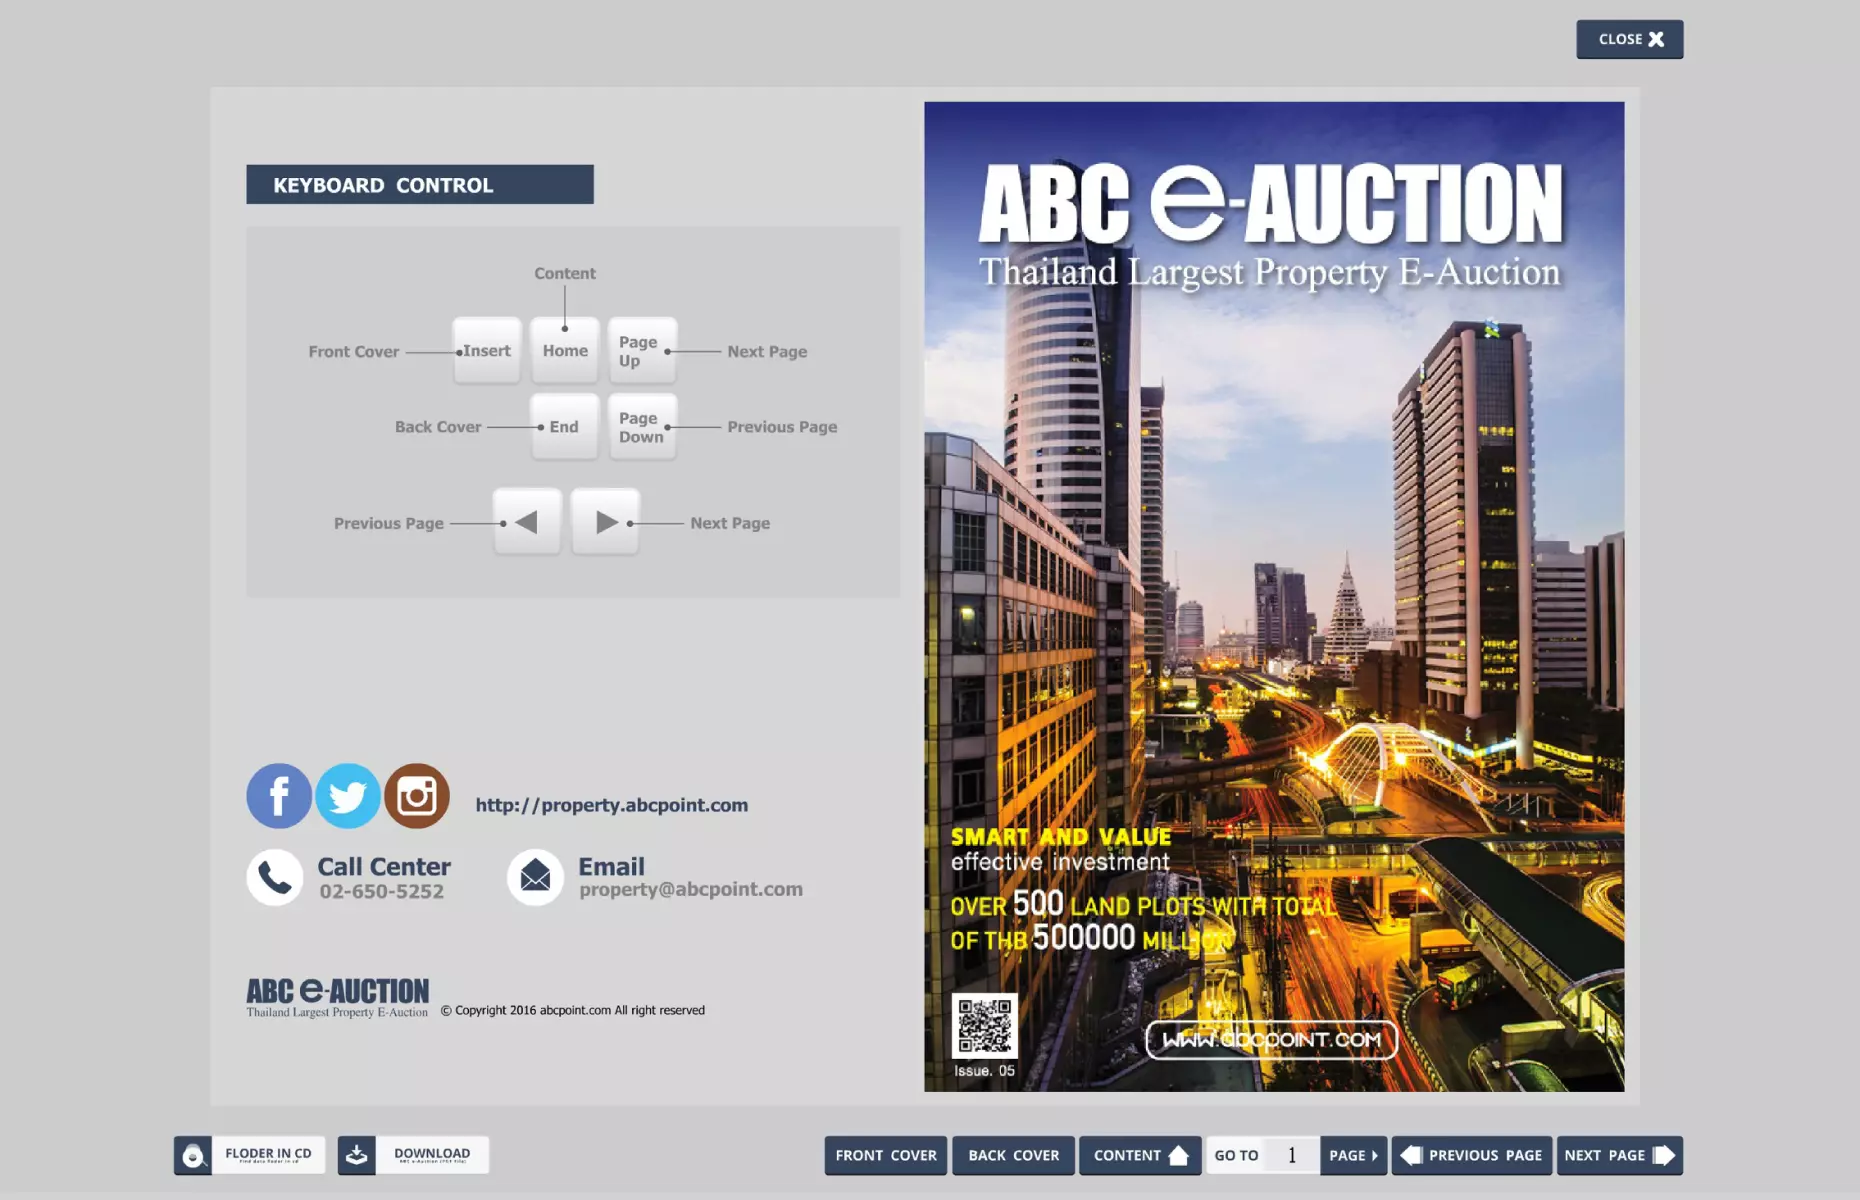 ABC E AUCTION